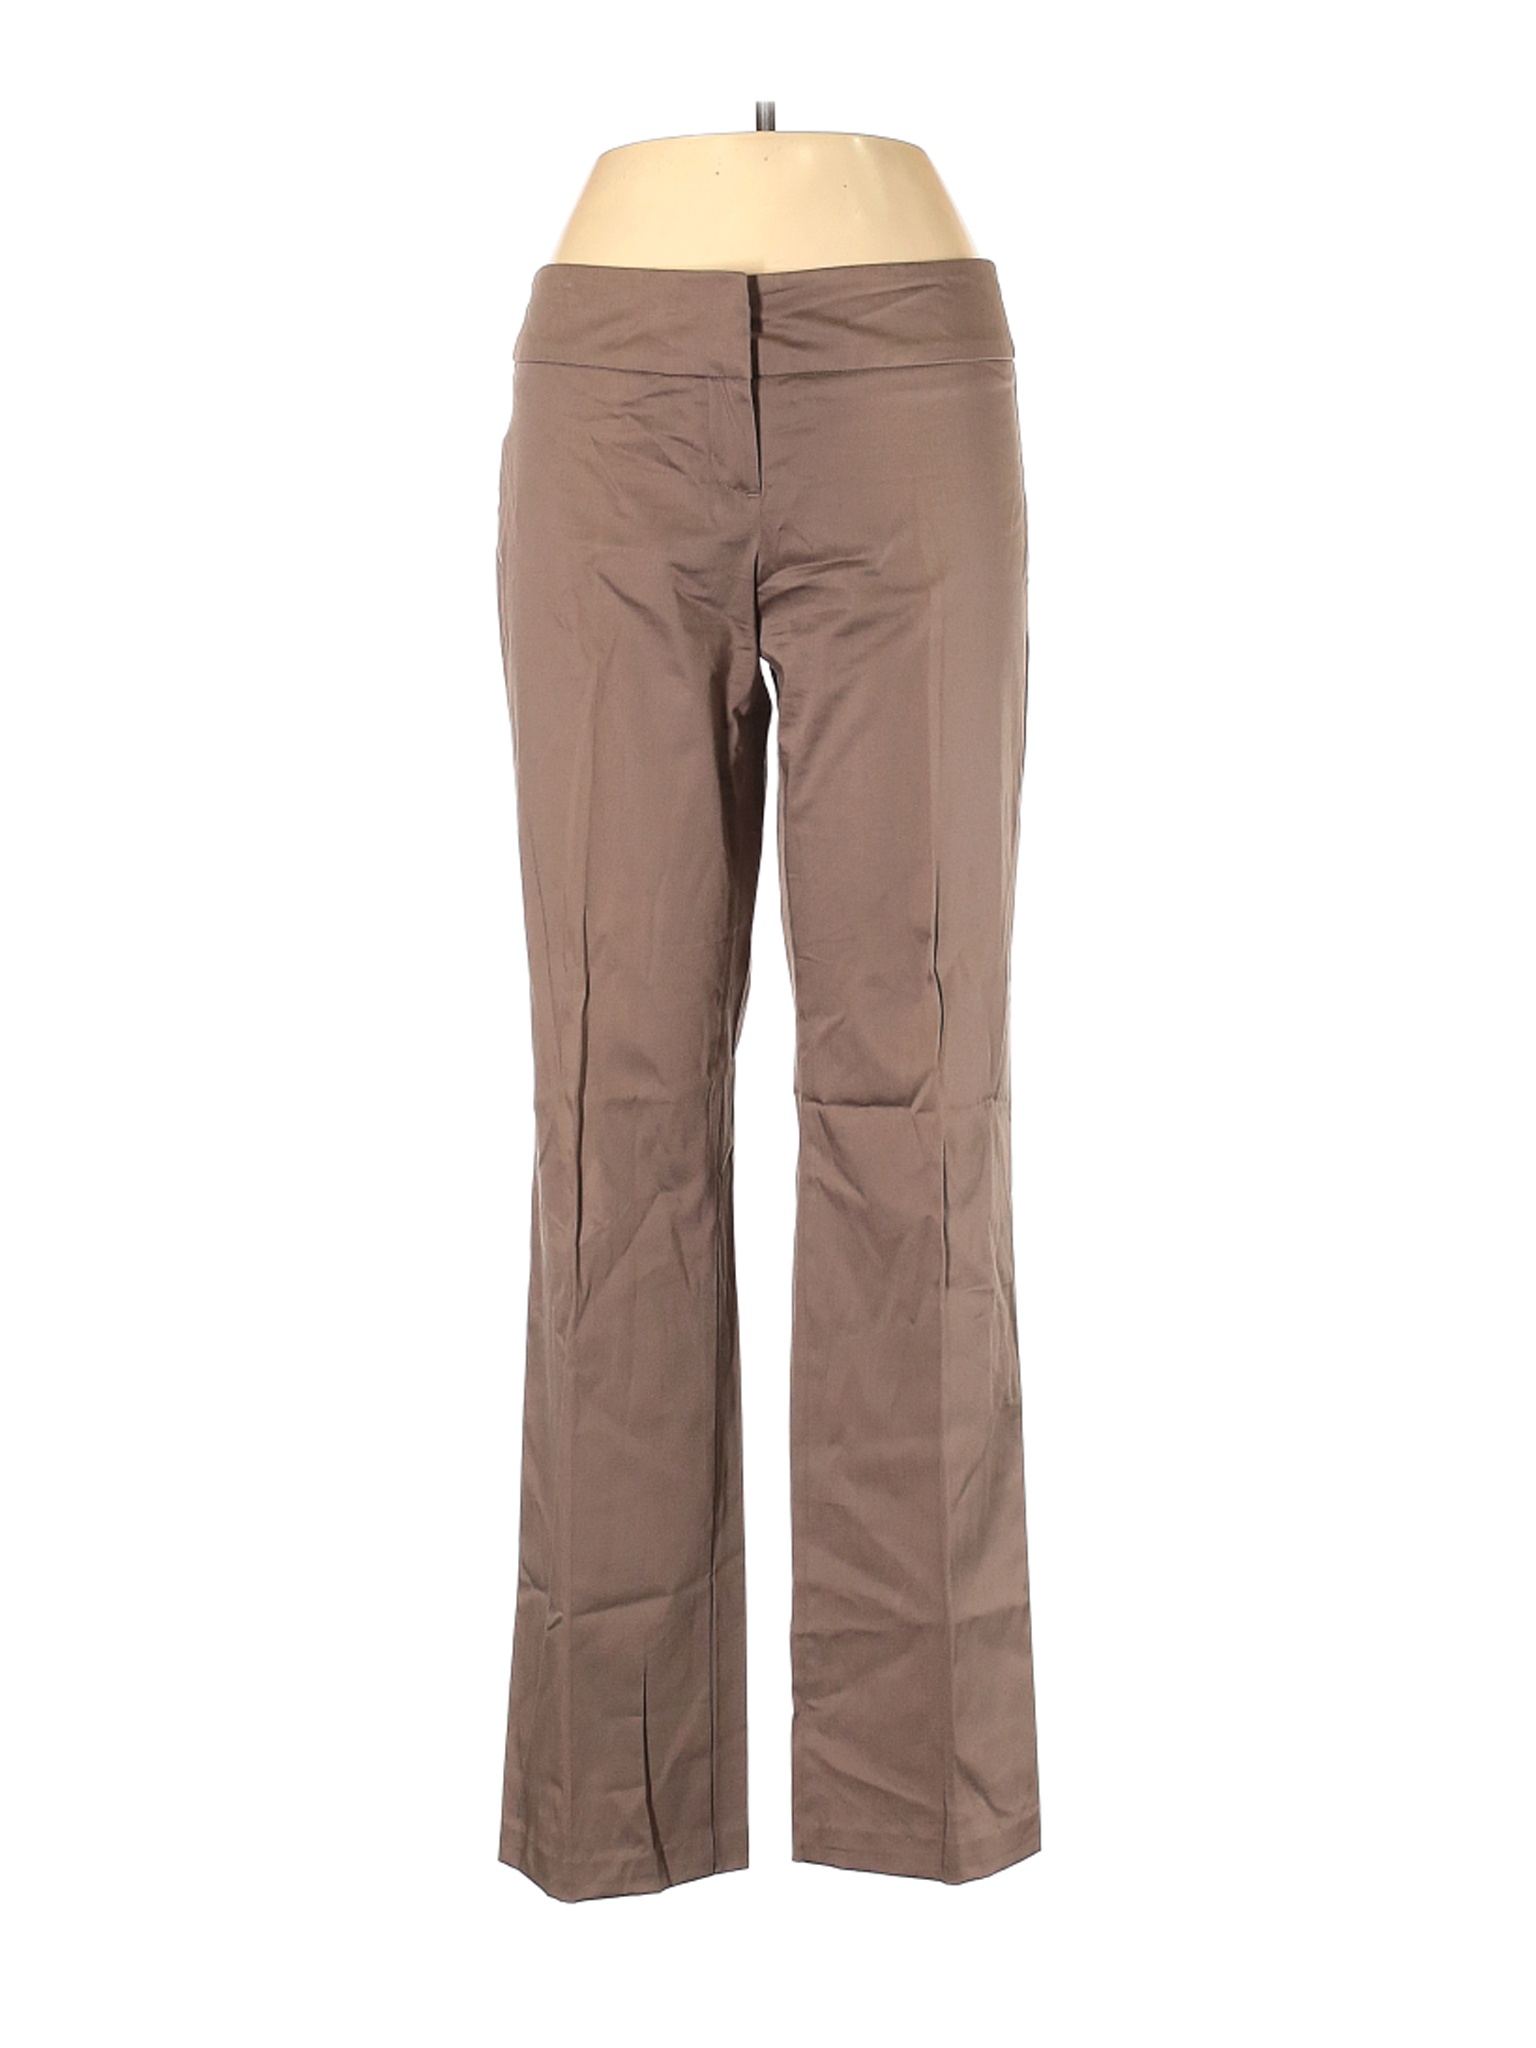 Sisley Women Brown Dress Pants 44 eur | eBay